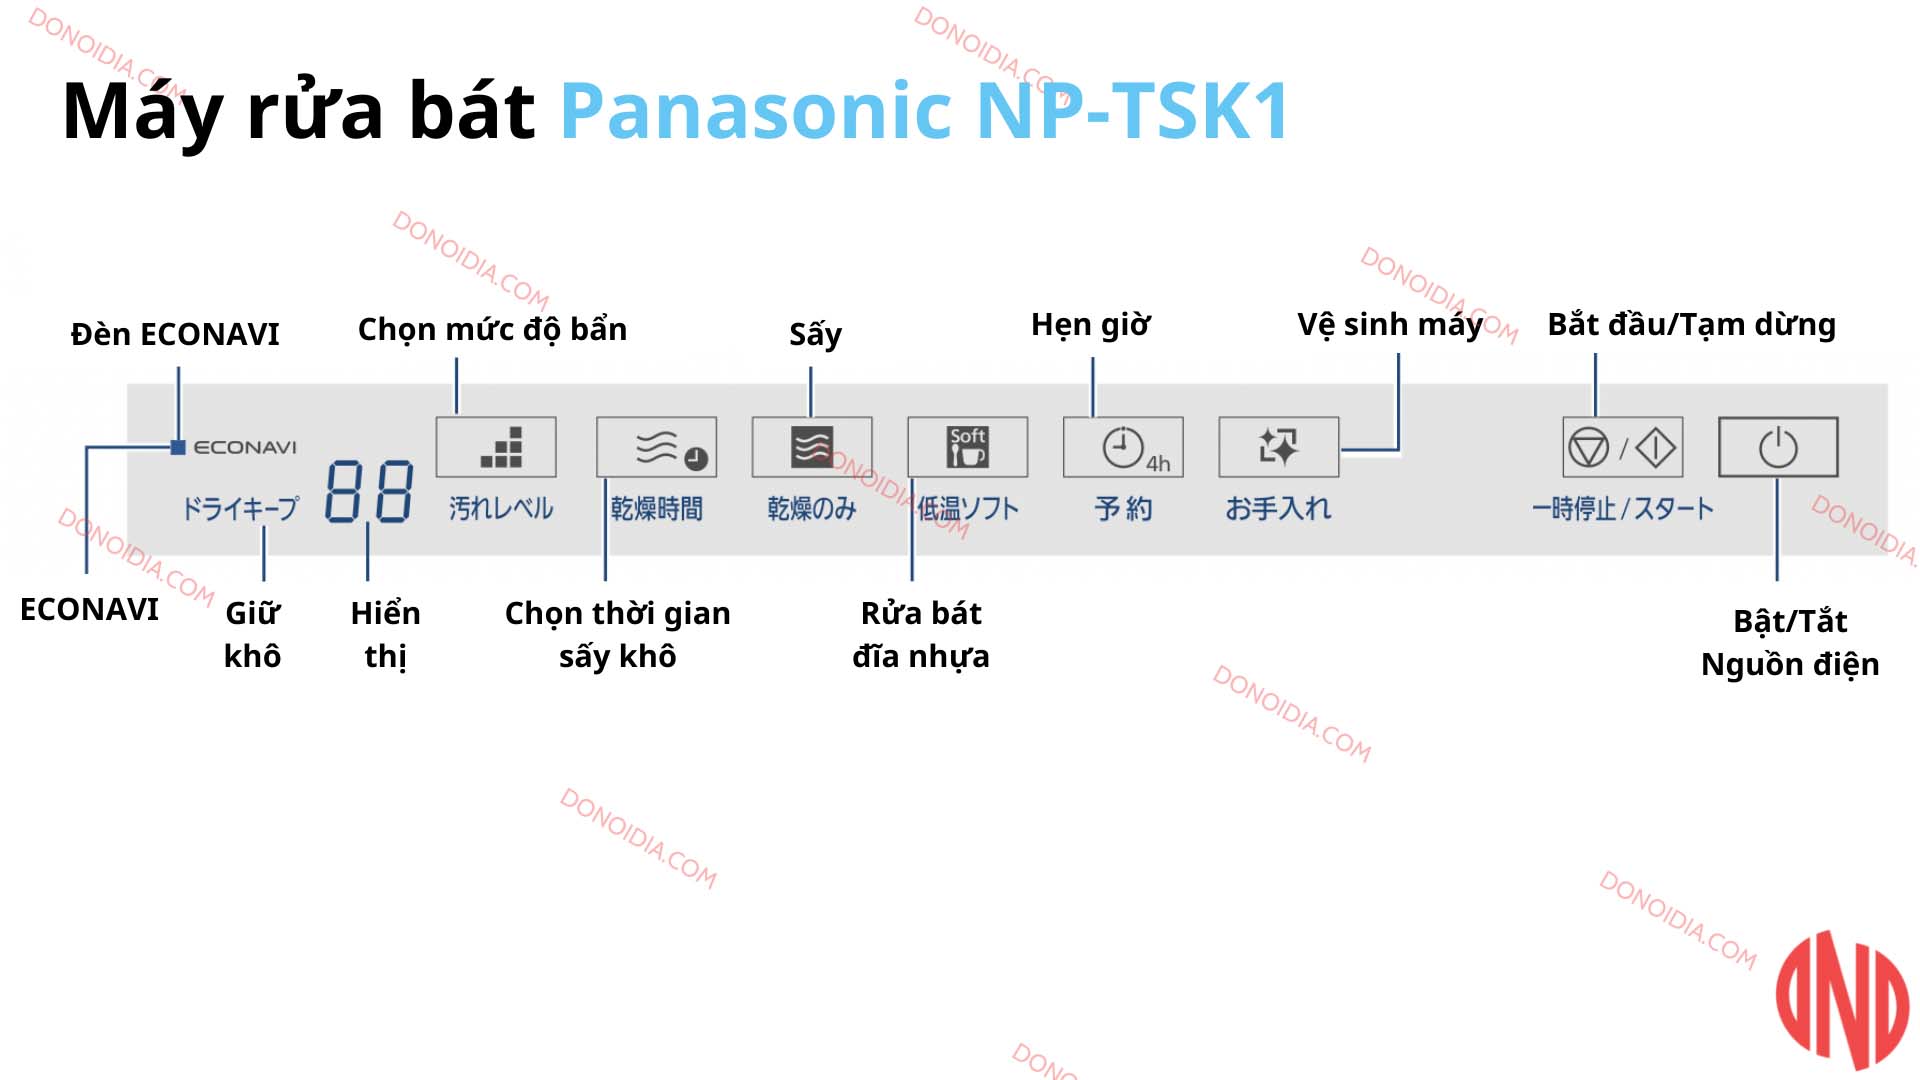 Hướng dẫn sử dụng máy rửa bát Panasonic NP-TSK1